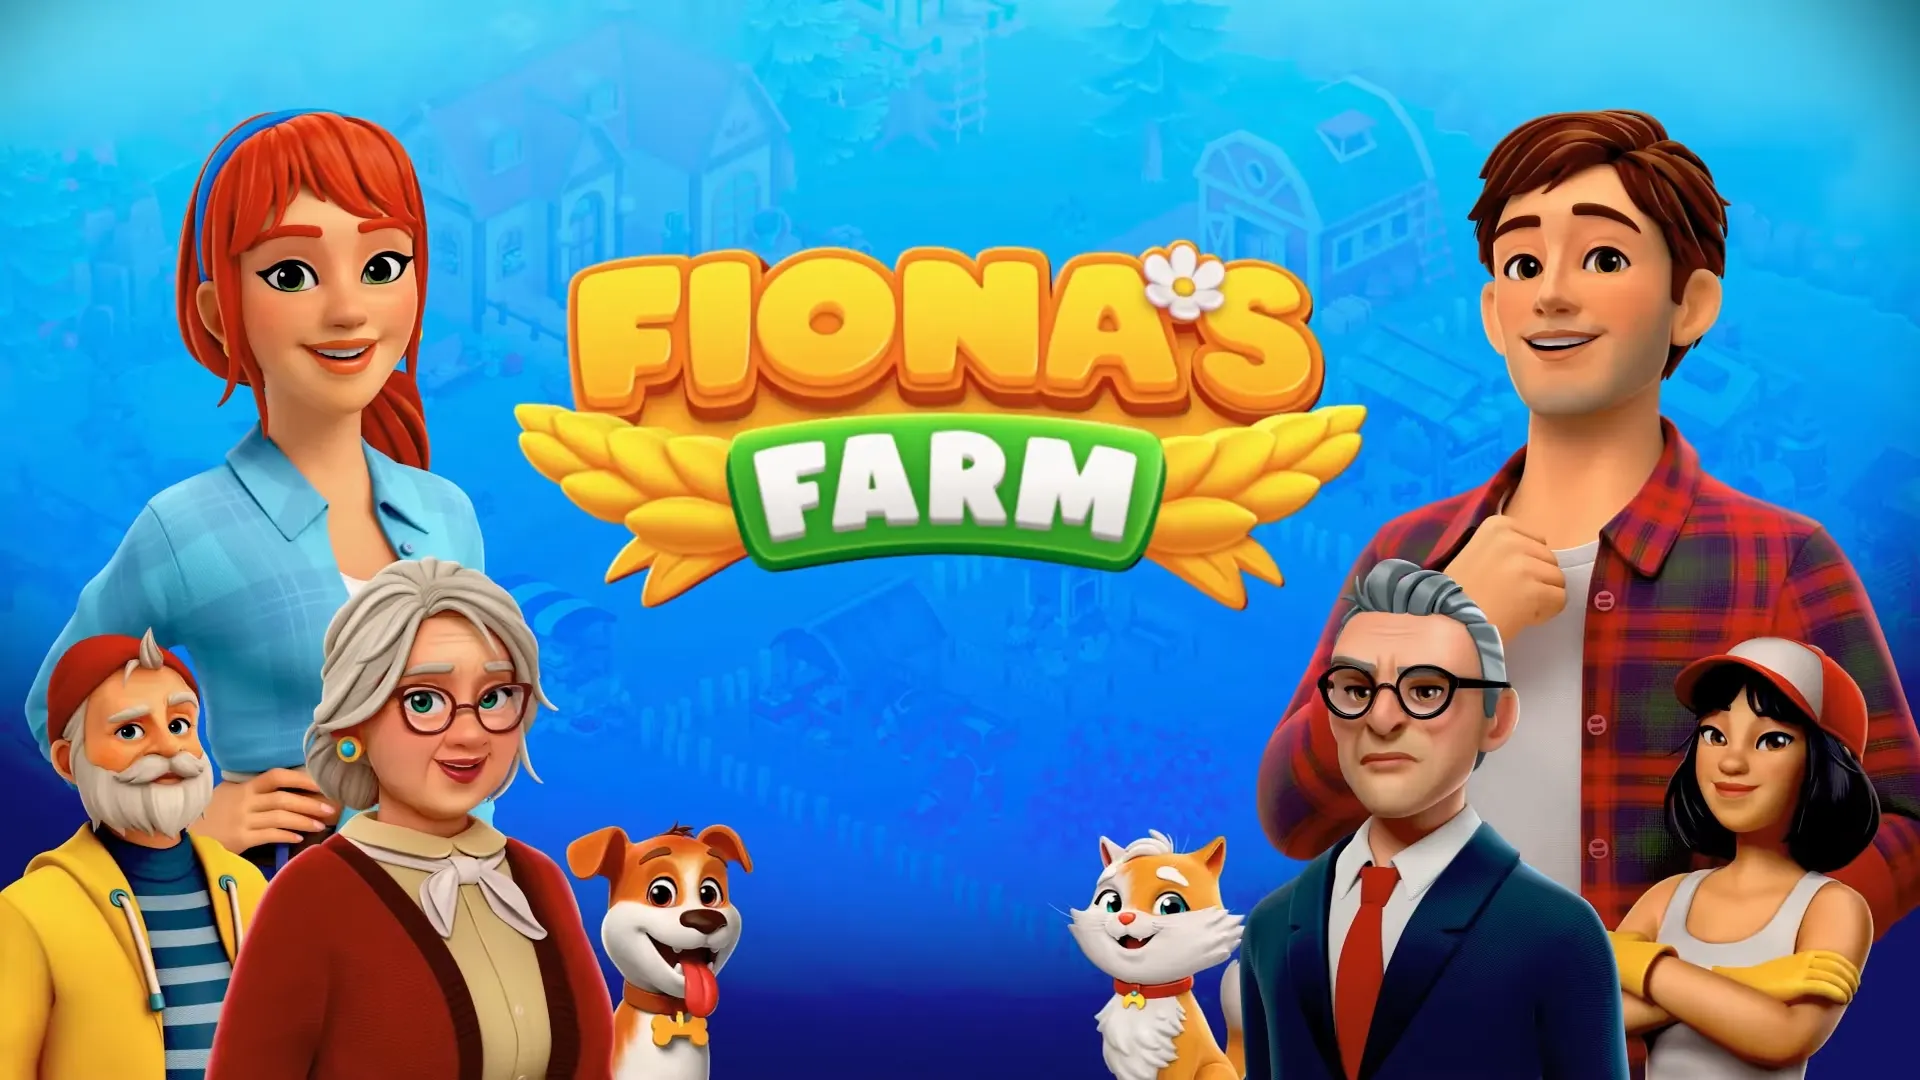 フィオナの農場 (Fiona’s Farm)のレビューと序盤攻略